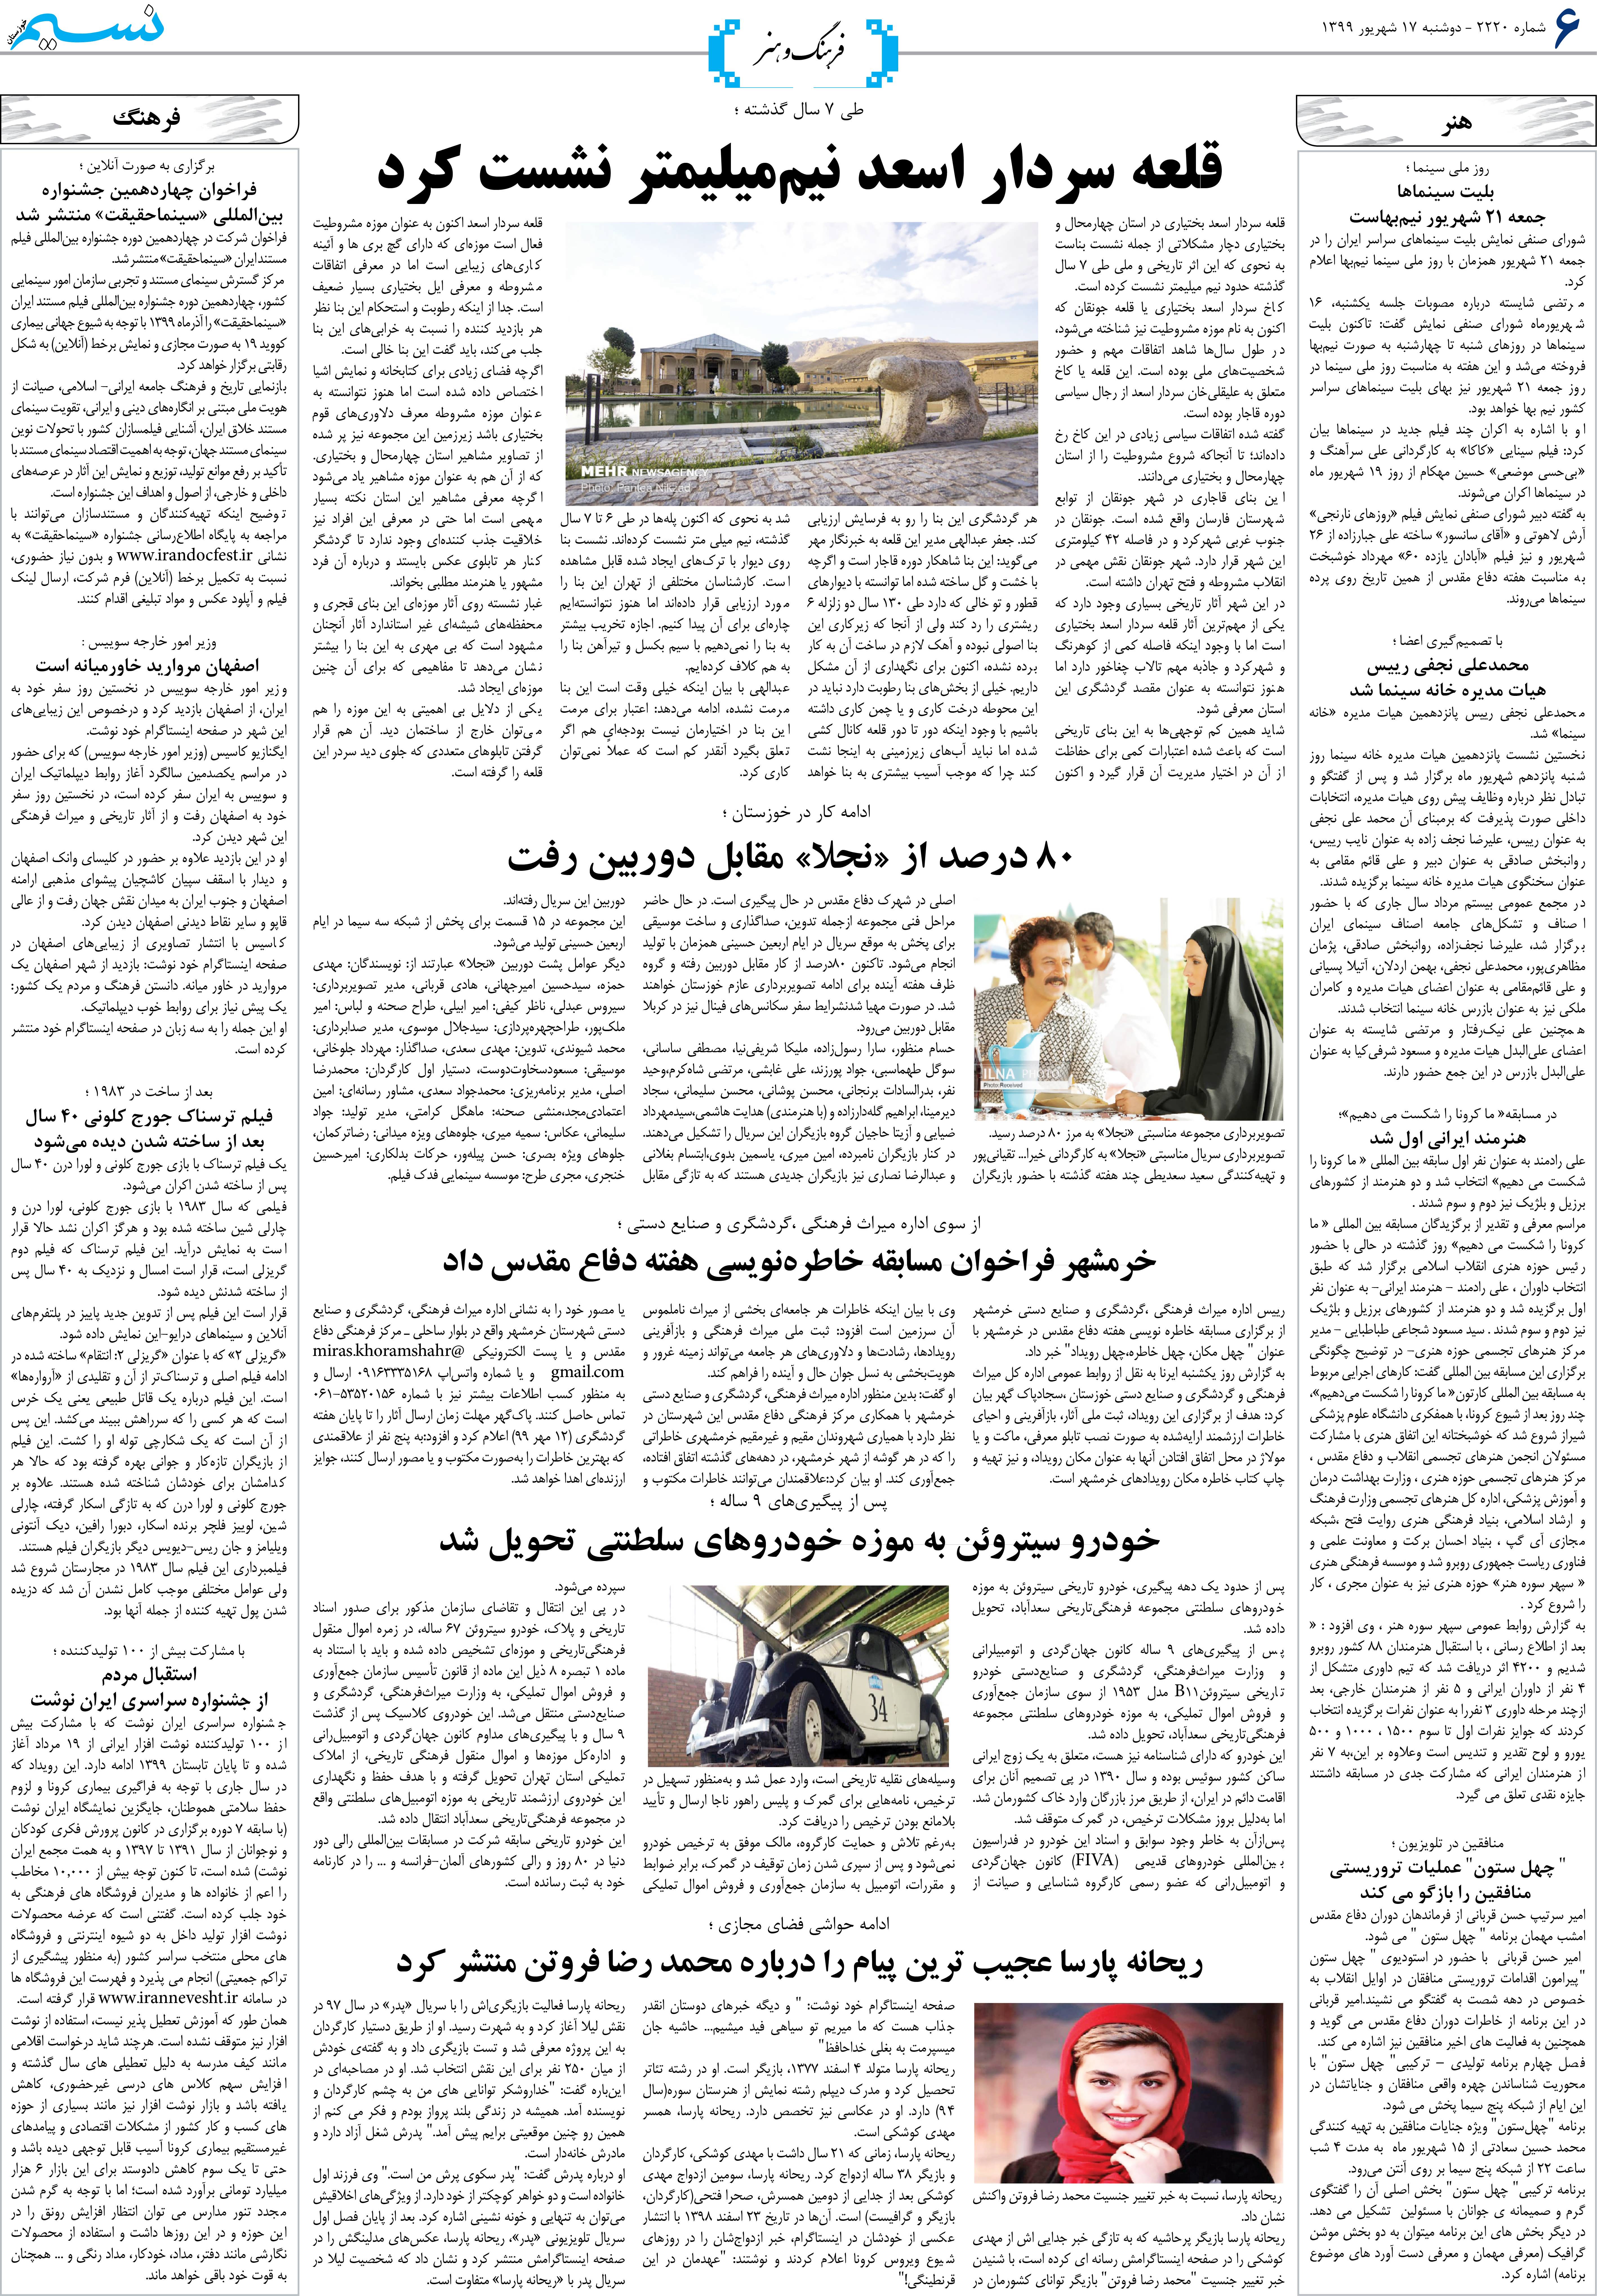 صفحه فرهنگ و هنر روزنامه نسیم شماره 2220